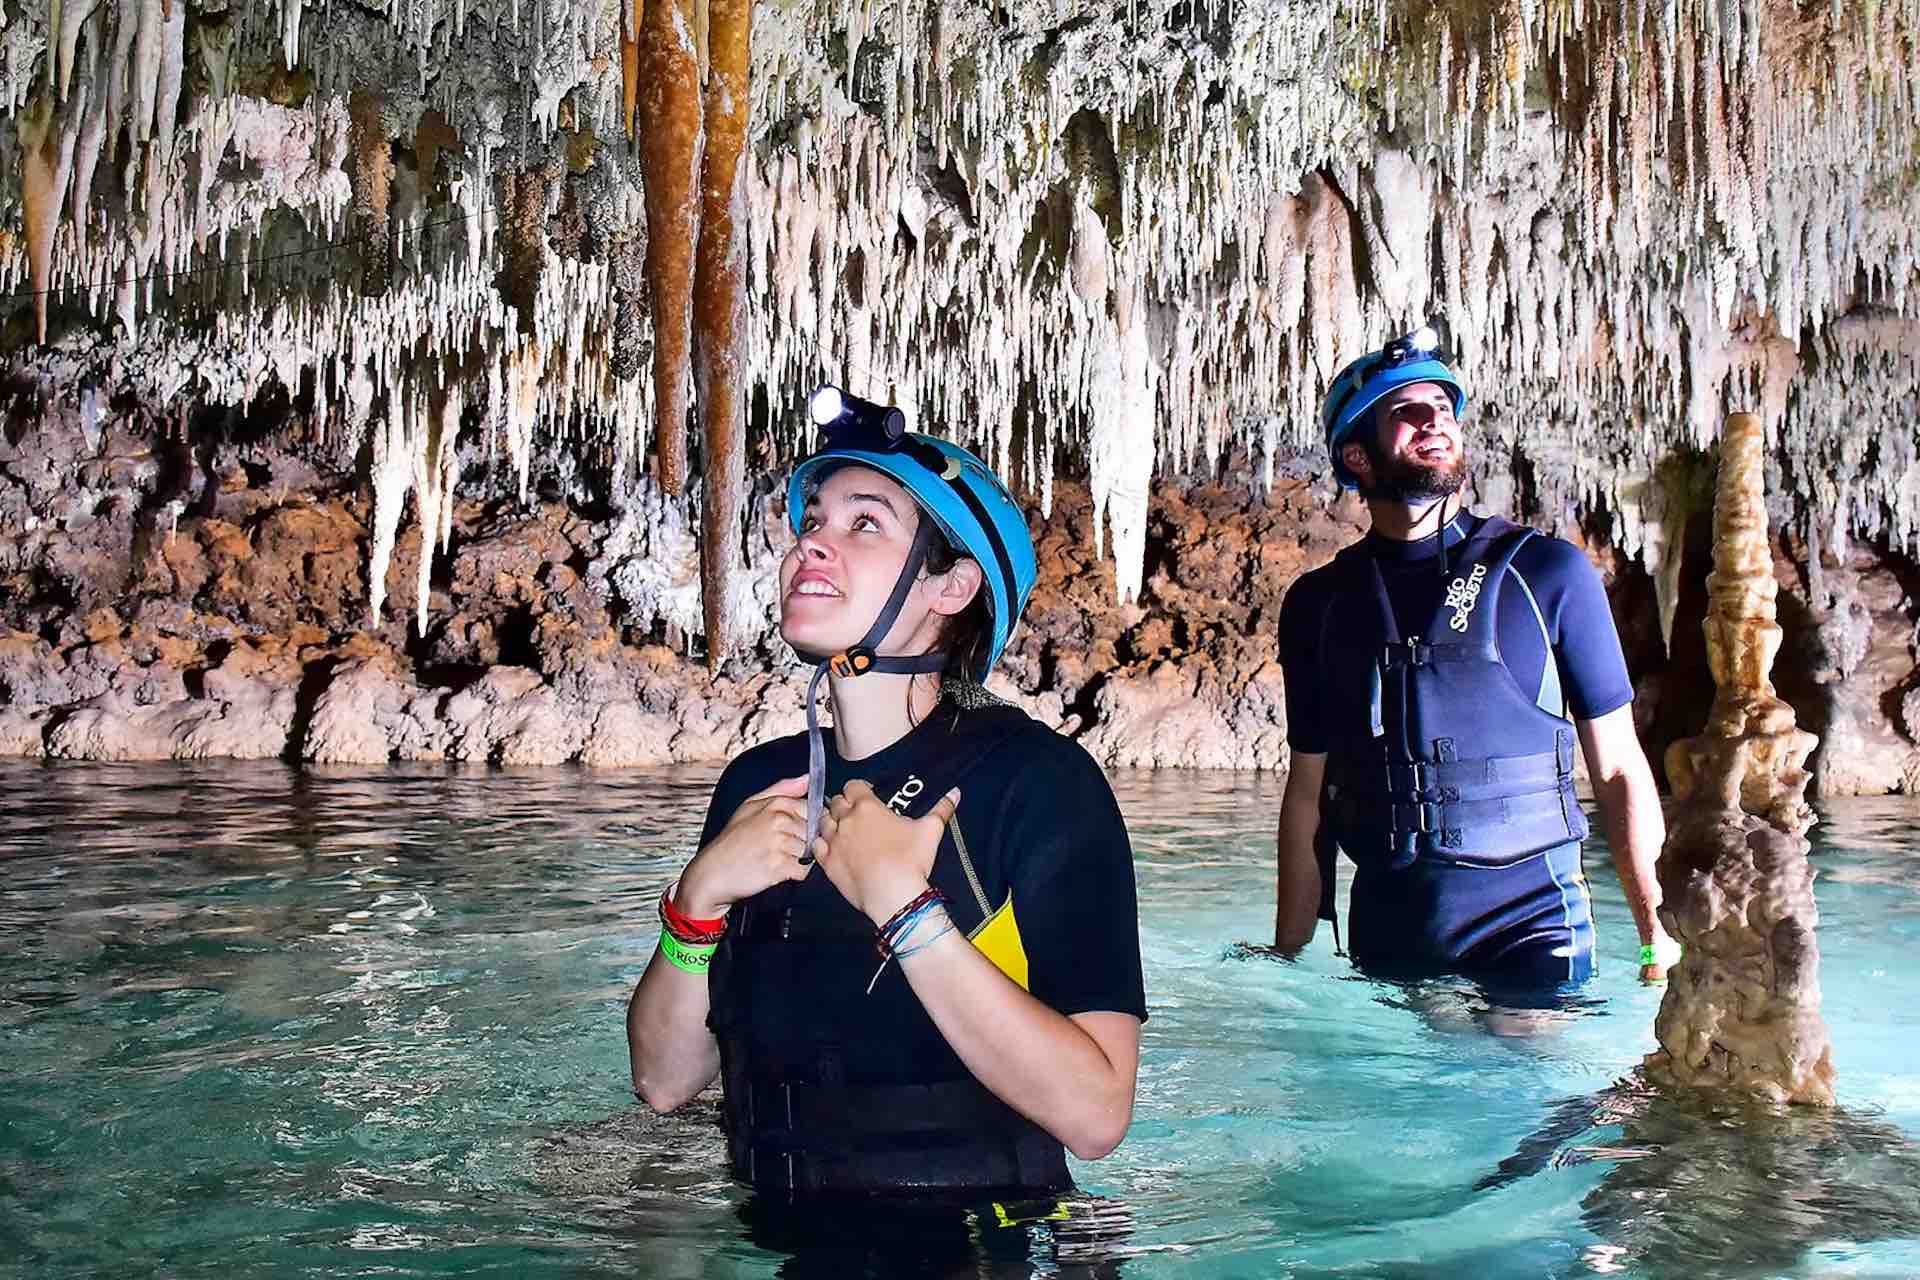 ATV Playa del Carmen Secret Caves tour amazed guests tourists